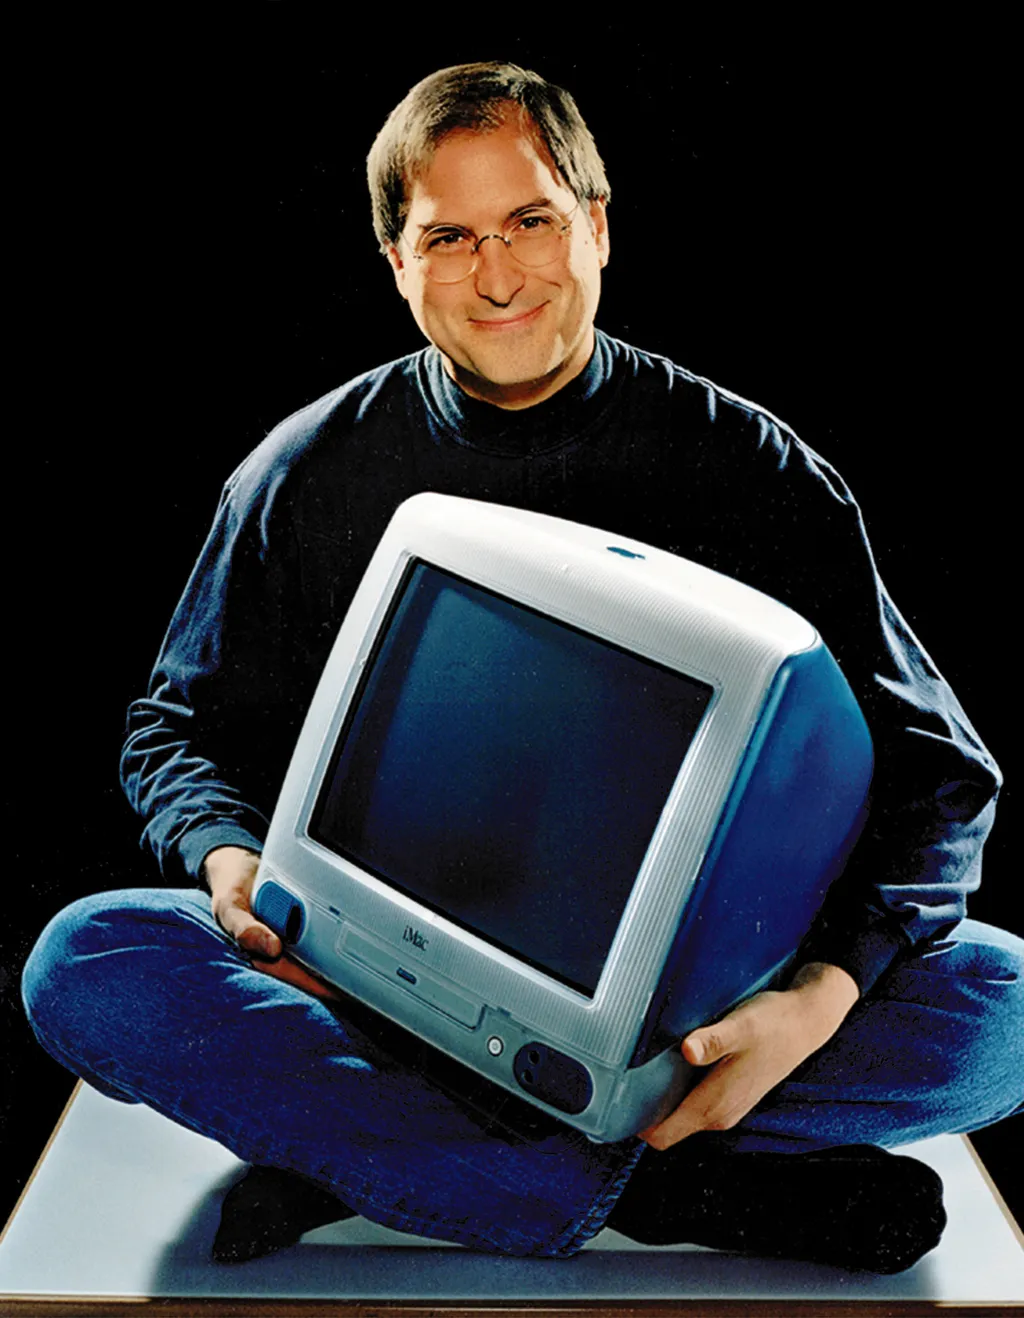 Steve Jobs fez história com o iMac, e em breve repetiria mais um marco histórico com o anúncio do iPod (Imagem: Reprodução/Newsweek)